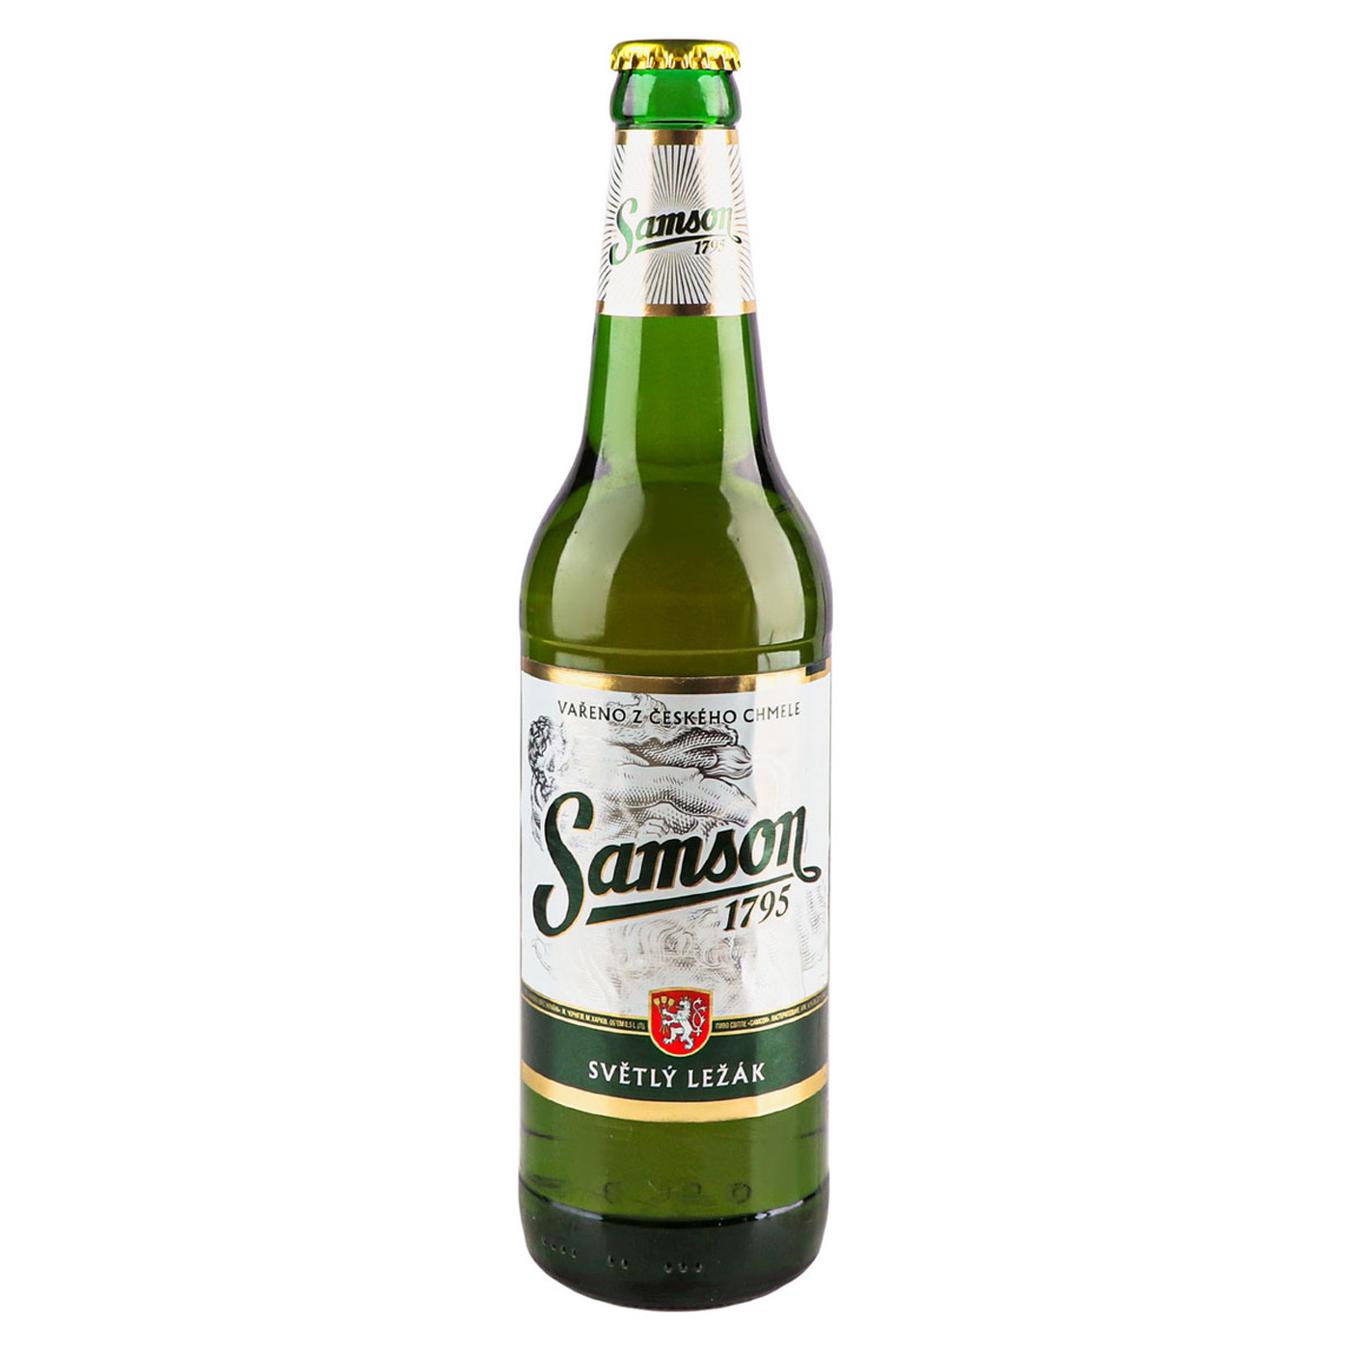 Light beer Samson 4.1% 0.5l glass